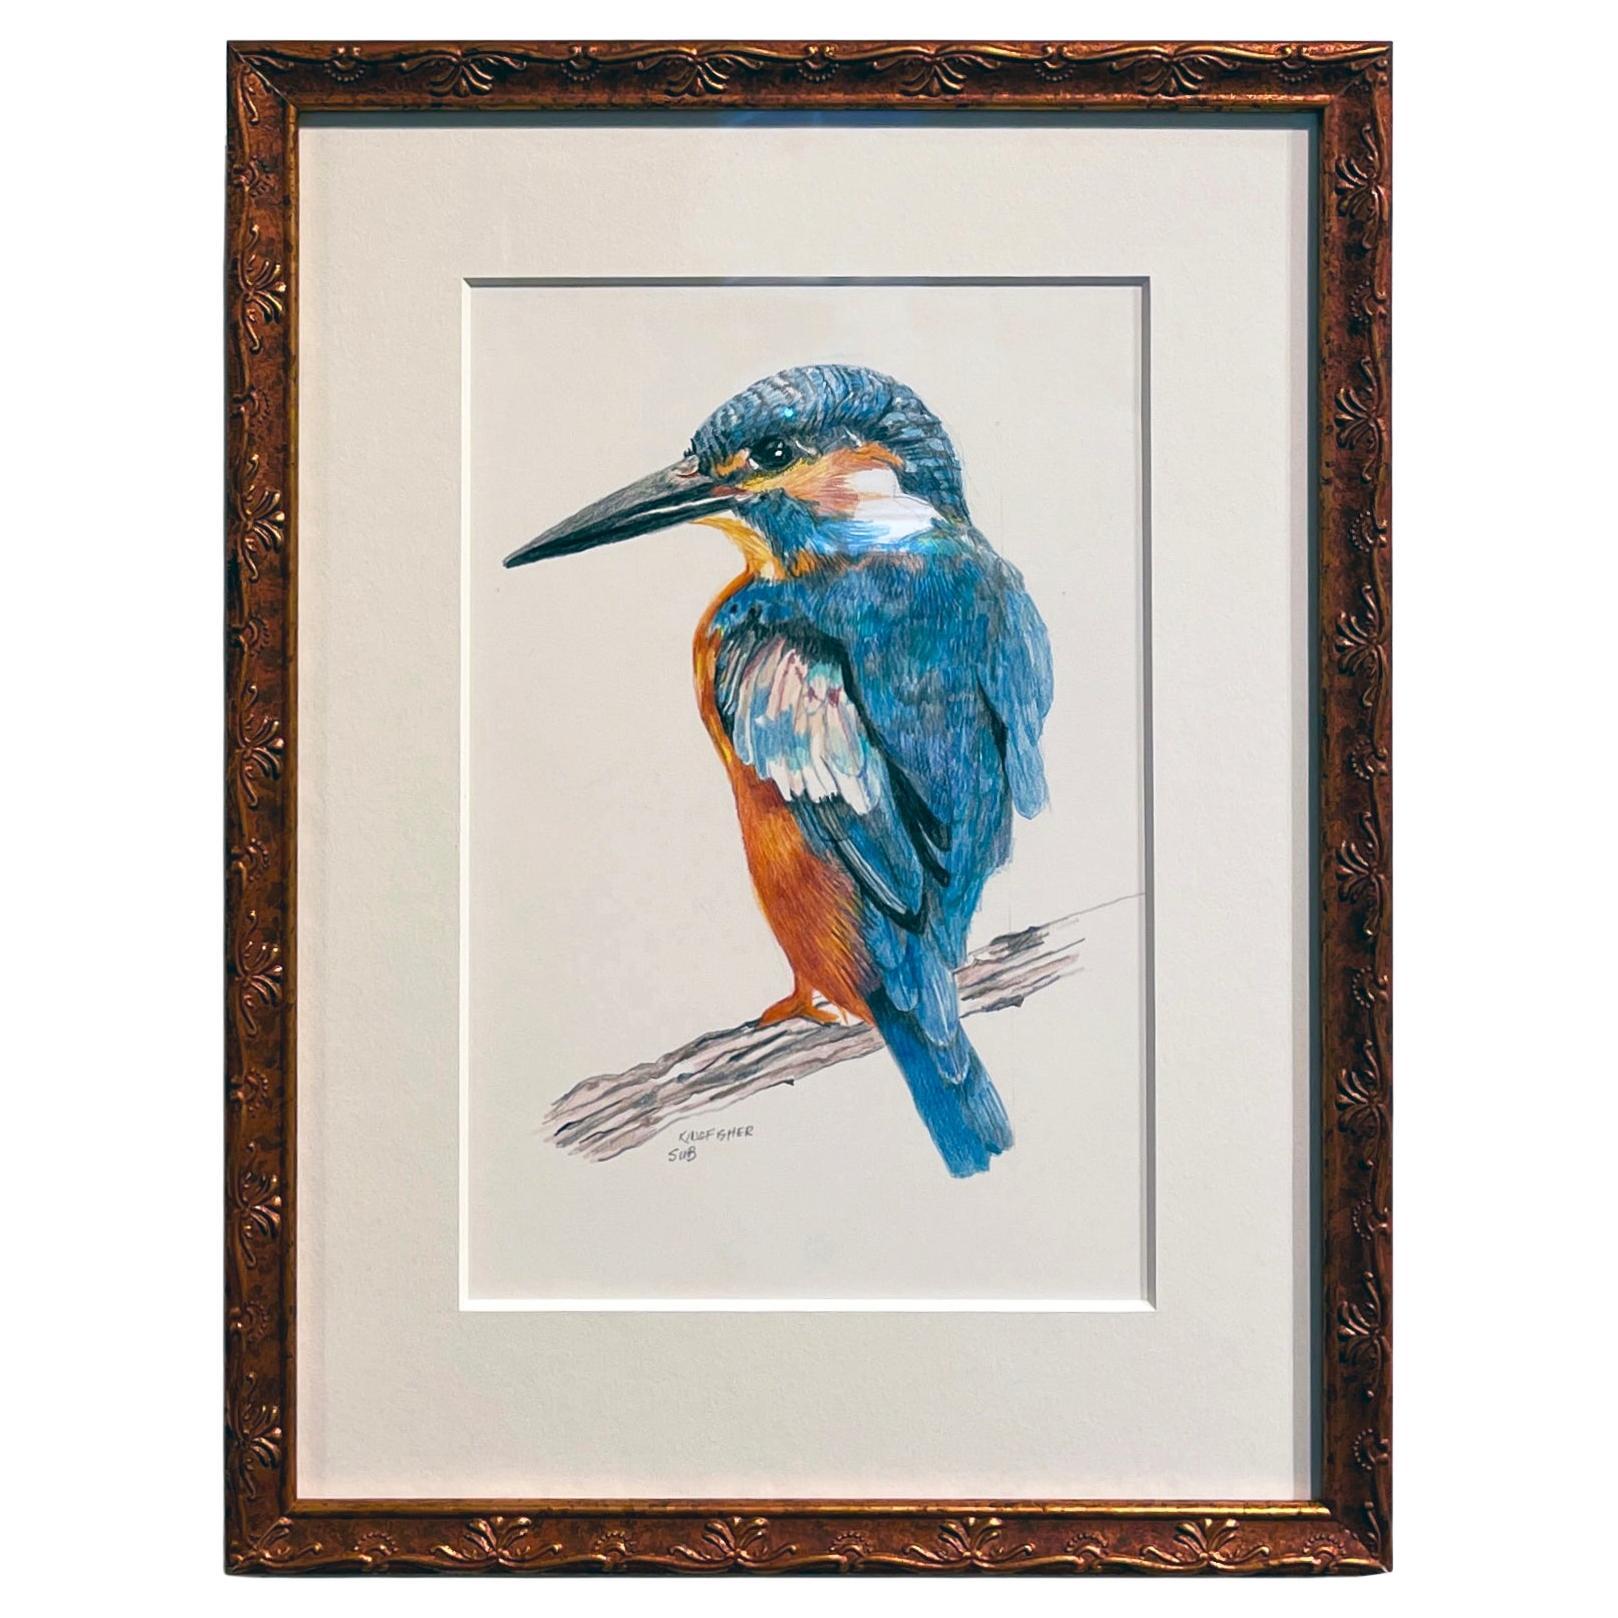 Kingfisher, Buntstiftzeichnung mit Blau, Orange, Braun, mattiert & gerahmt im Angebot